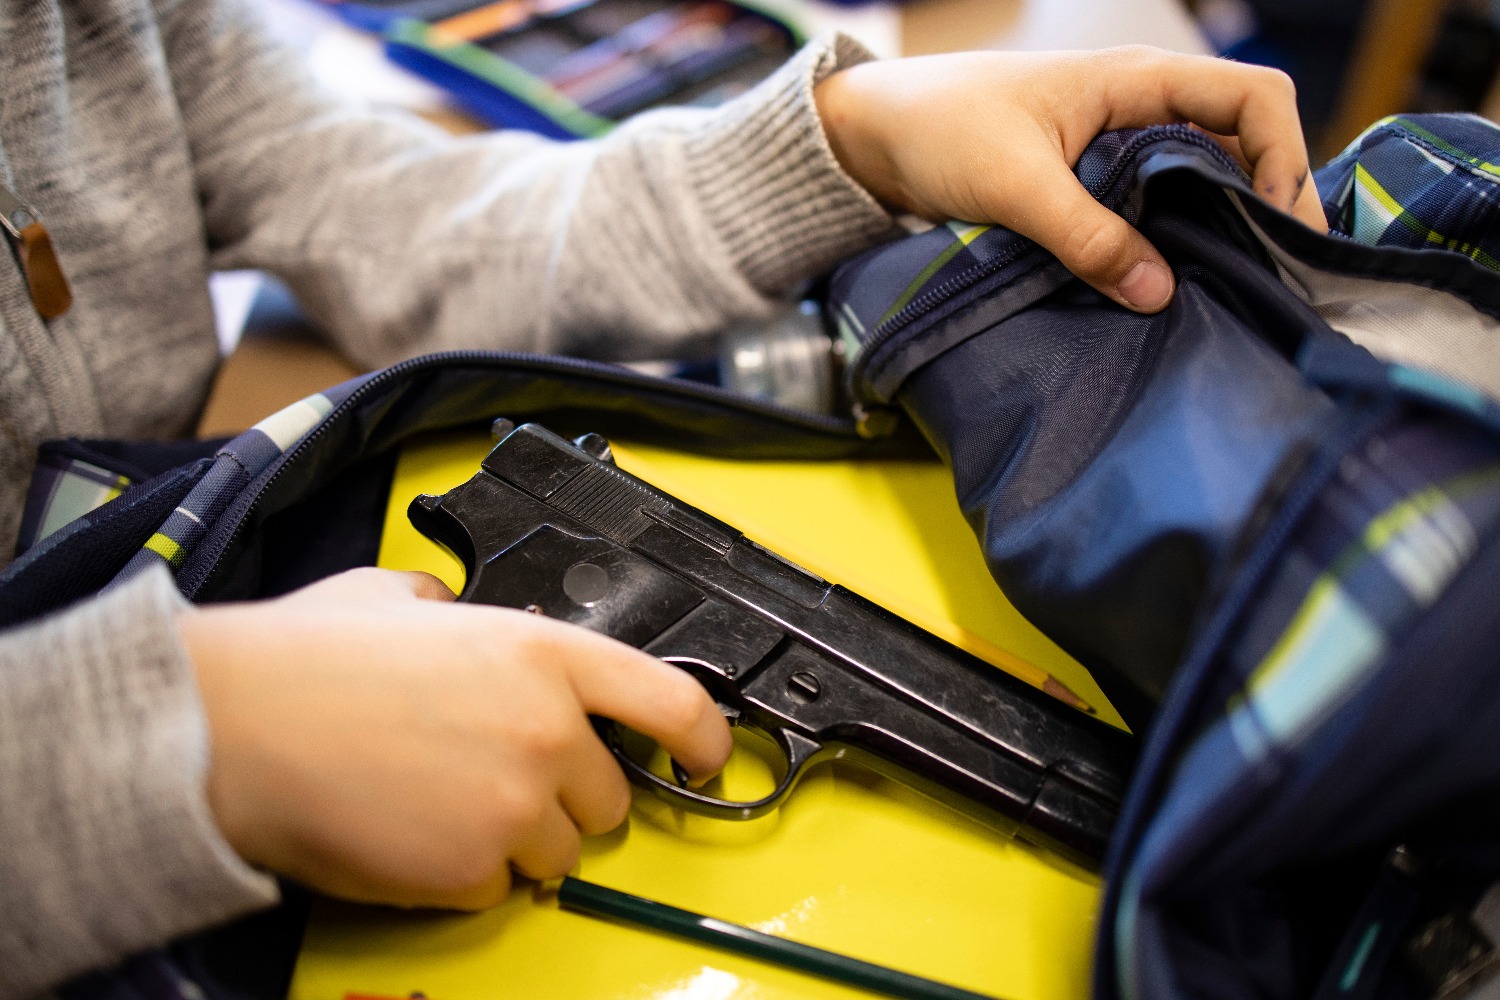  США: 6-летний мальчик выстрелил в учительницу в классе 